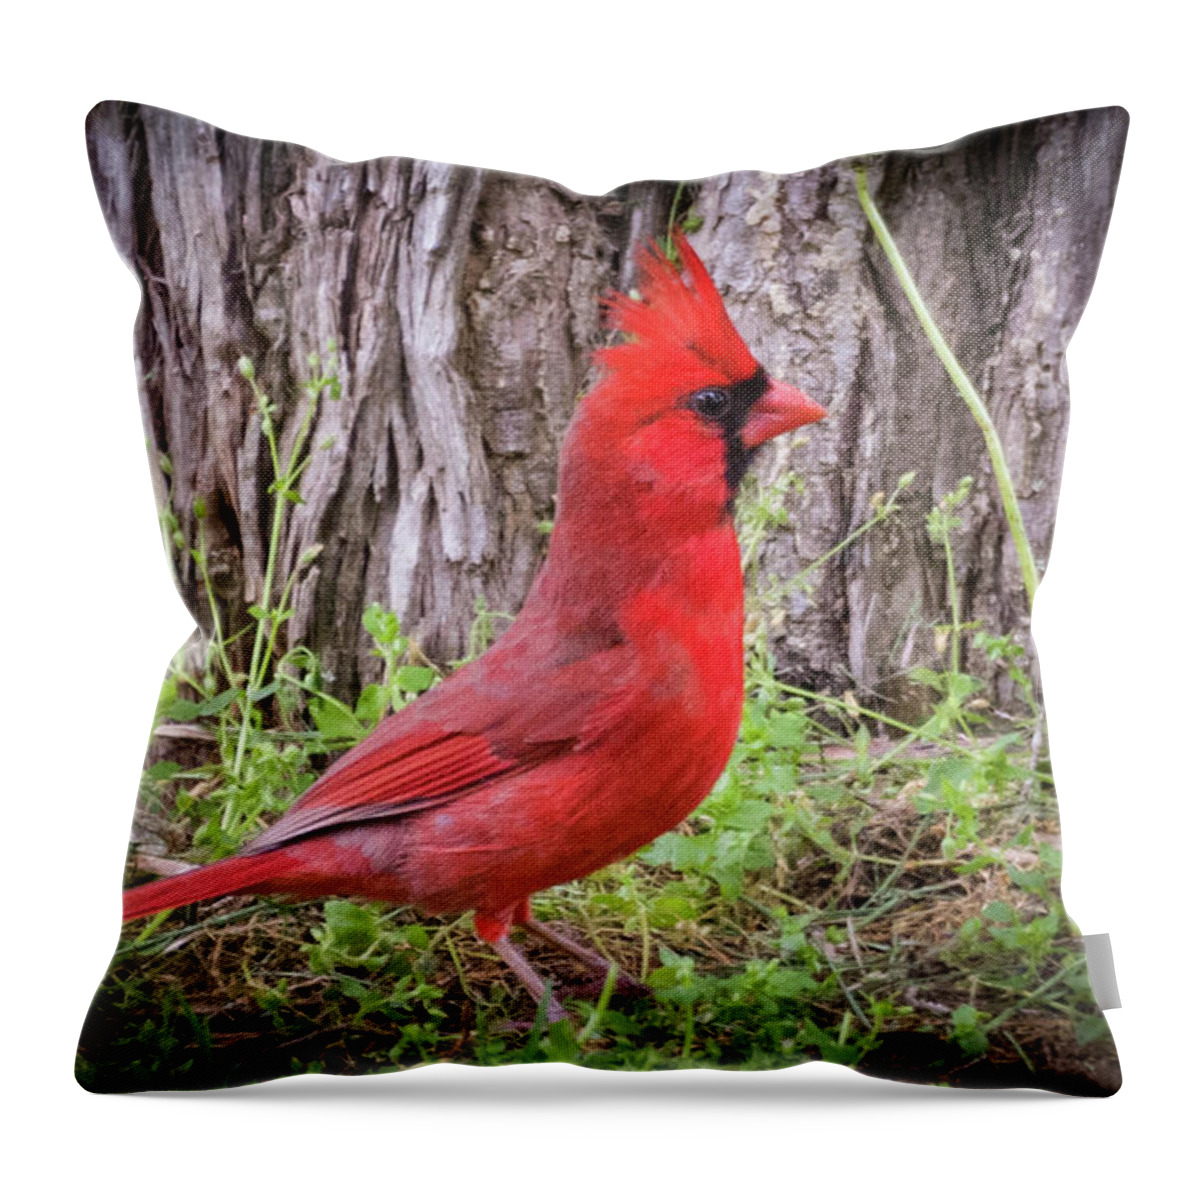 May Throw Pillow featuring the photograph Proud Cardinal by John Benedict